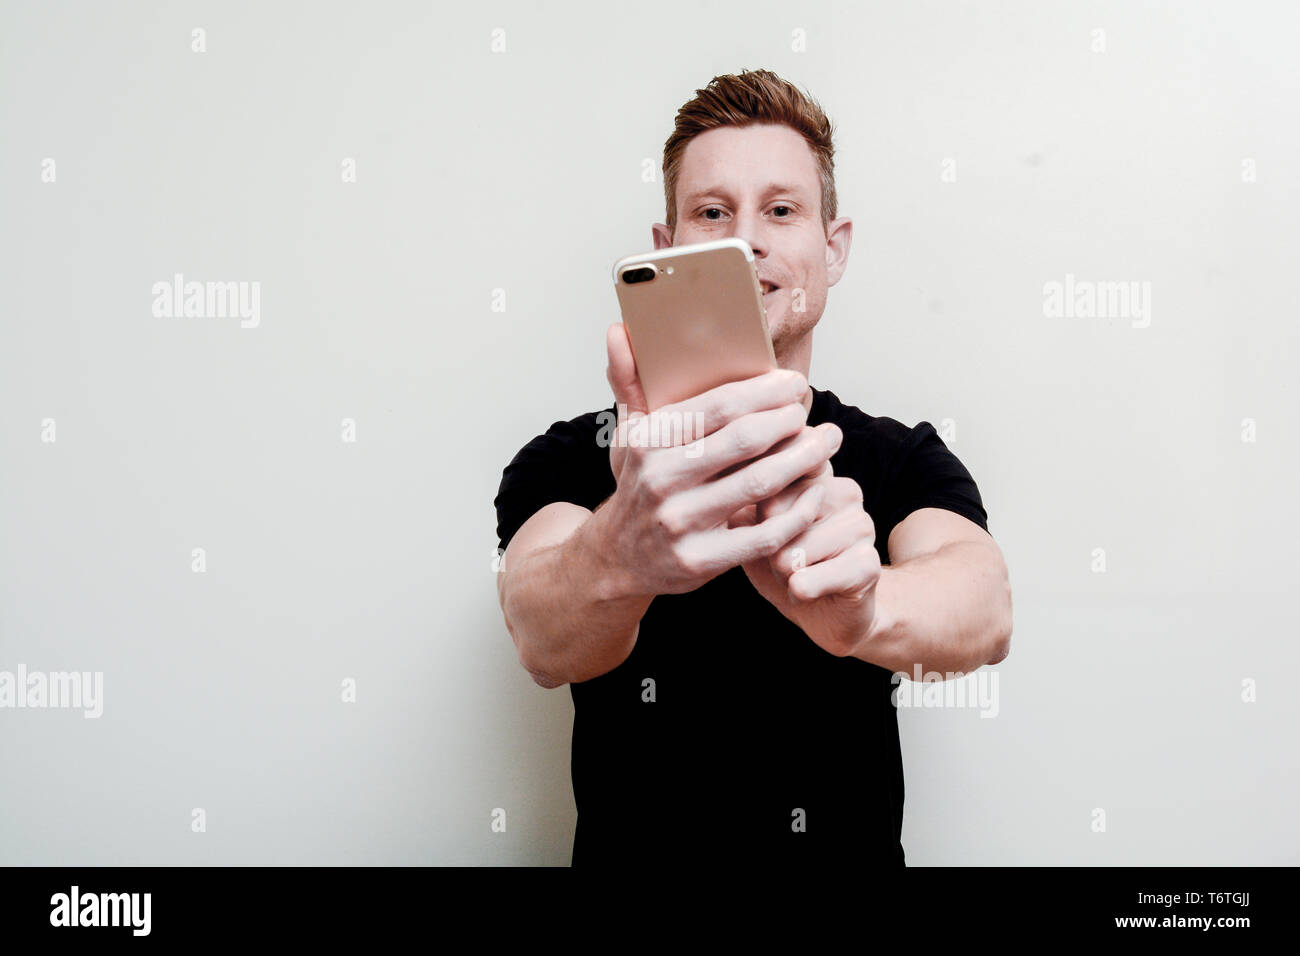 Mann mit einem mobilen ein selfie halten, um das Telefon zu nehmen Stockfoto